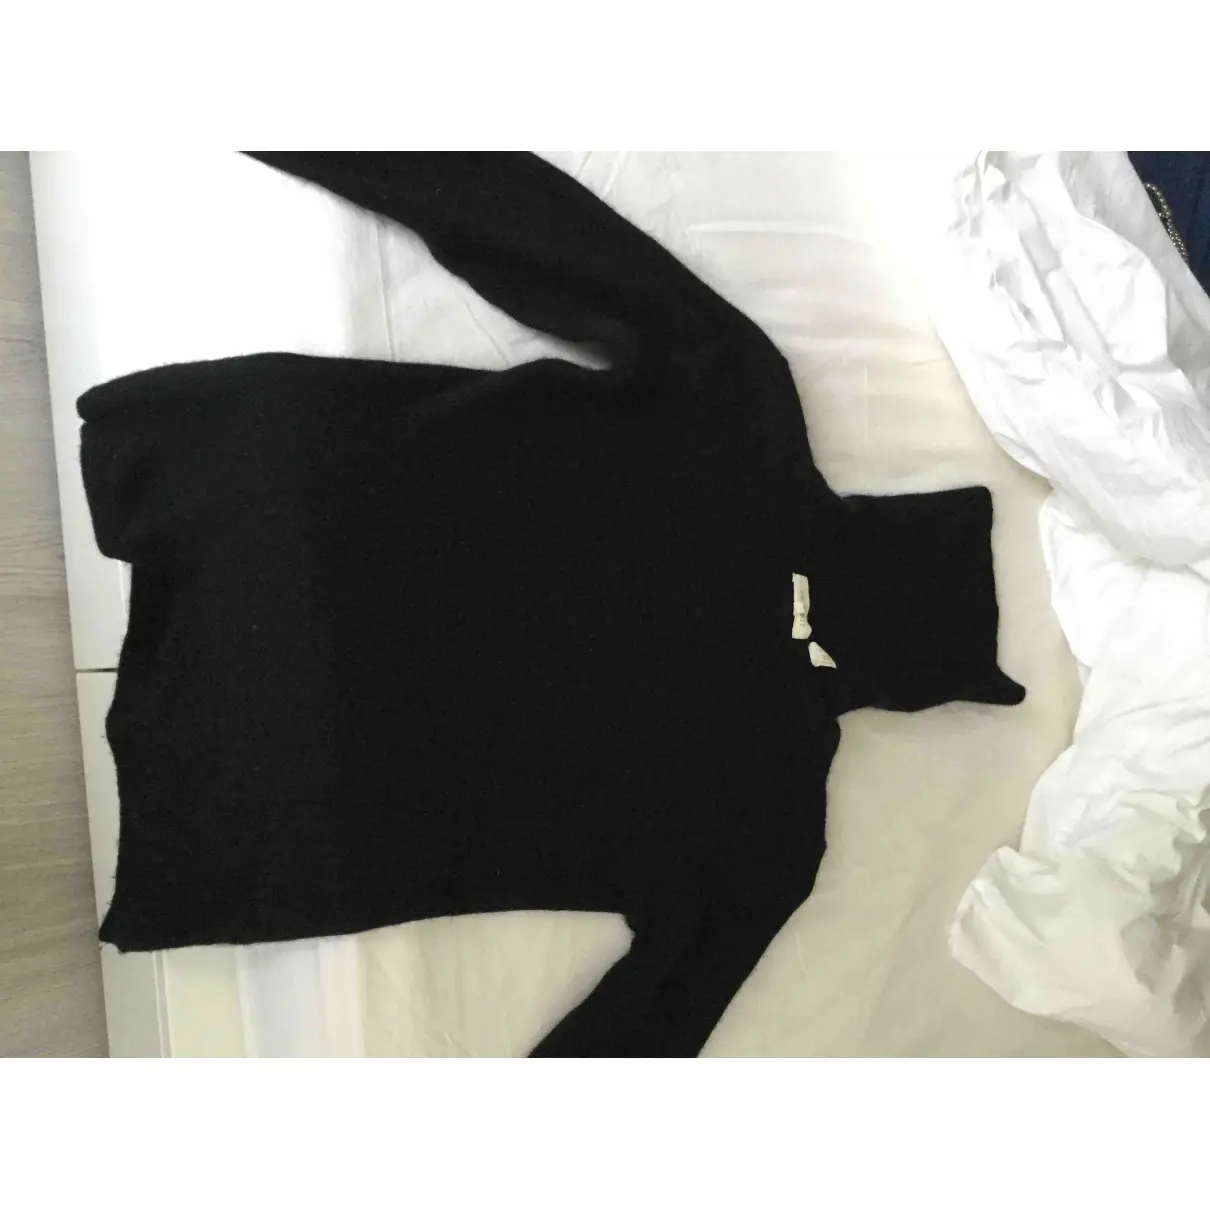 Inhabit Cashmere jumper for sale